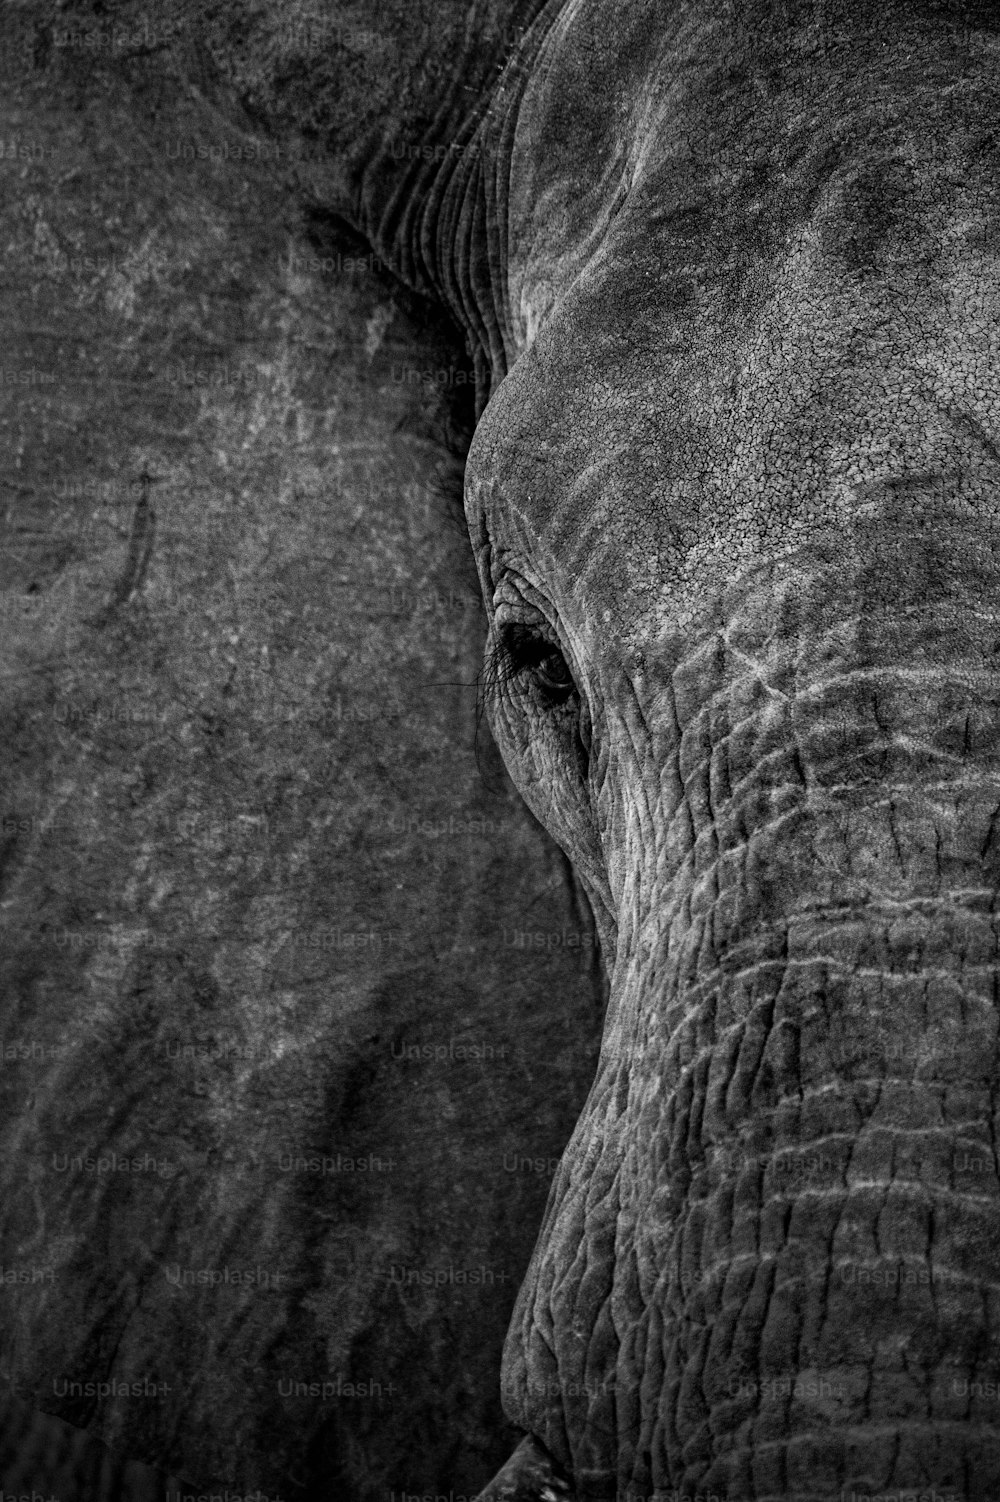 Una foto in bianco e nero della faccia di un elefante